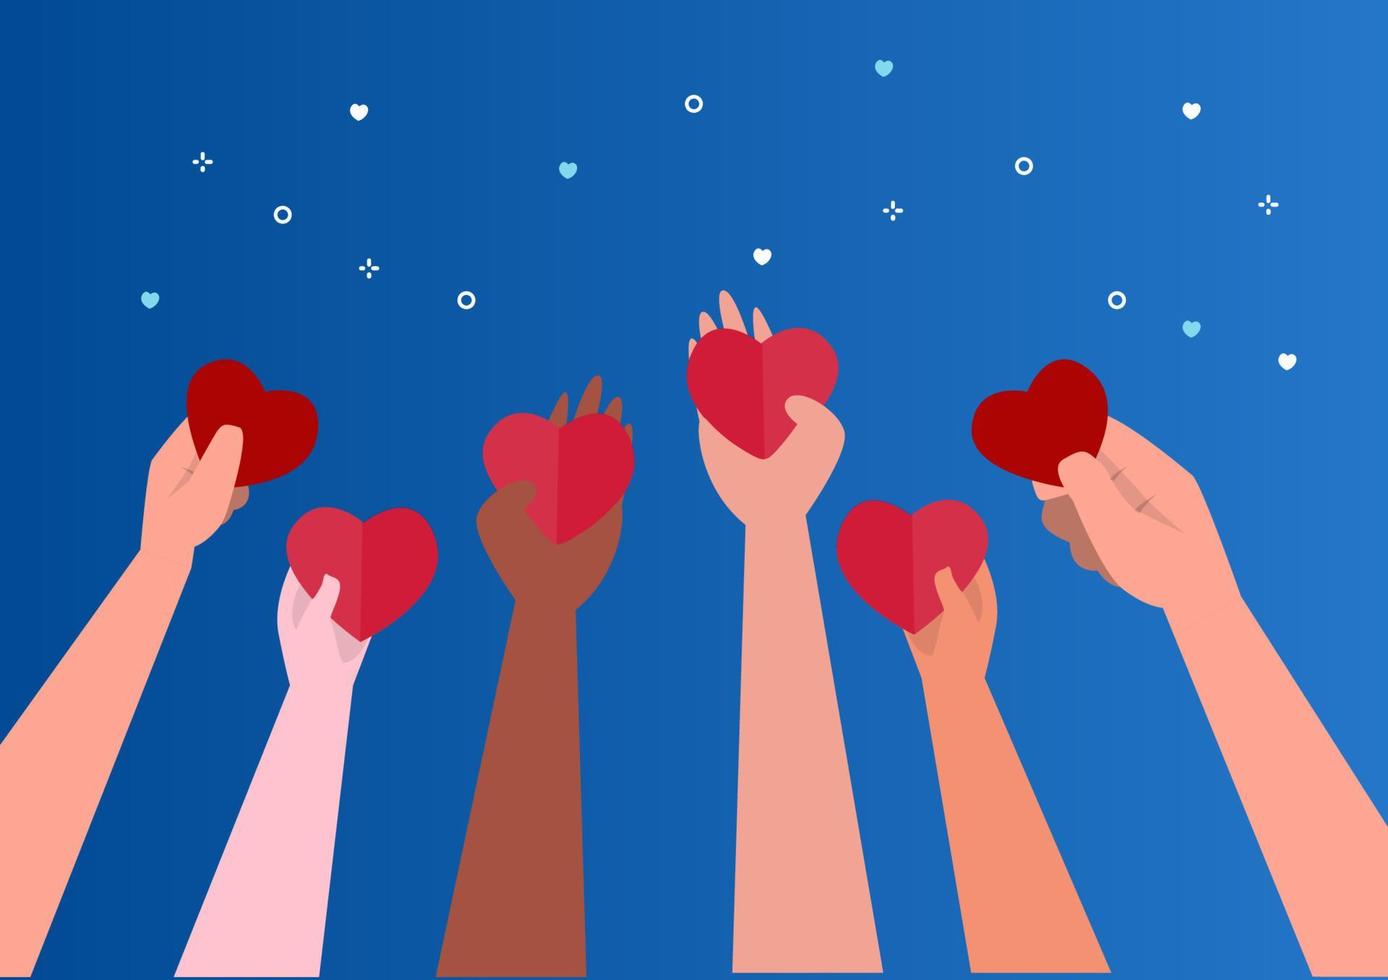 le concept de charité et de don de personnes de nombreuses nationalités donne et partage votre amour avec les gens. main tenant le symbole du coeur. conception plate. illustration vectorielle sur fond bleu. vecteur